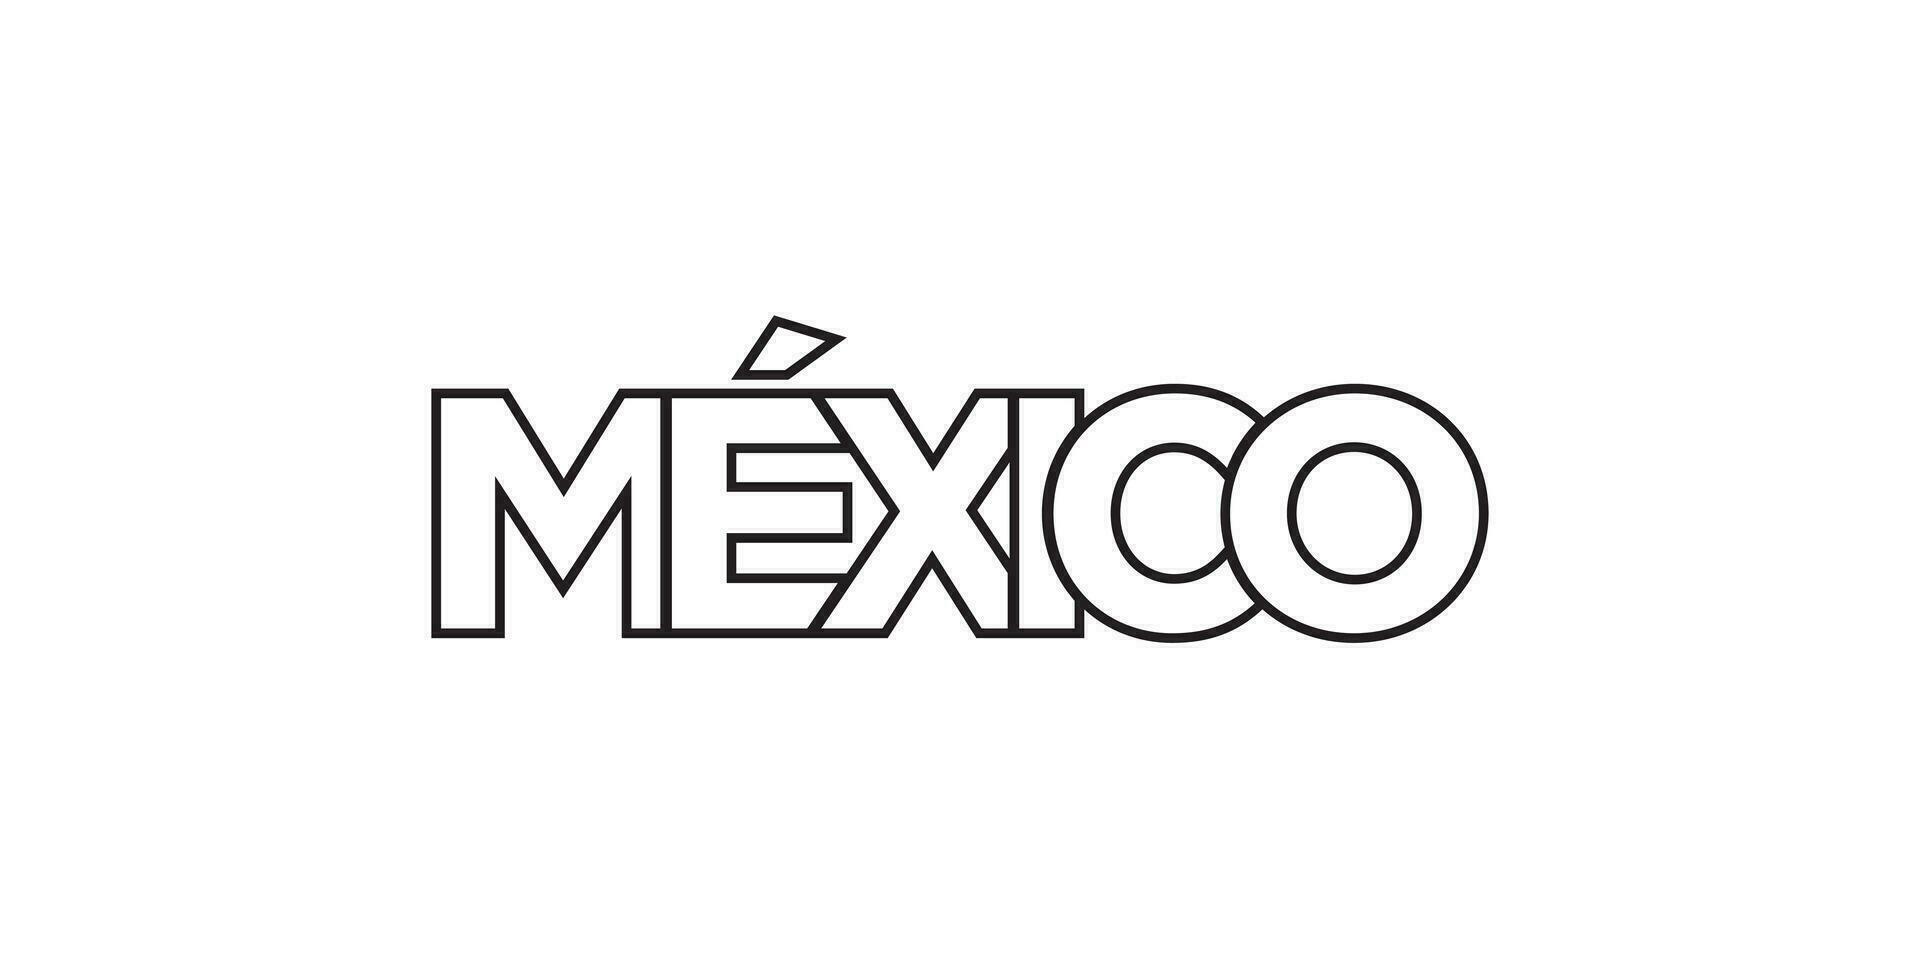 Mexico embleem. de ontwerp Kenmerken een meetkundig stijl, vector illustratie met stoutmoedig typografie in een modern lettertype. de grafisch leuze belettering.